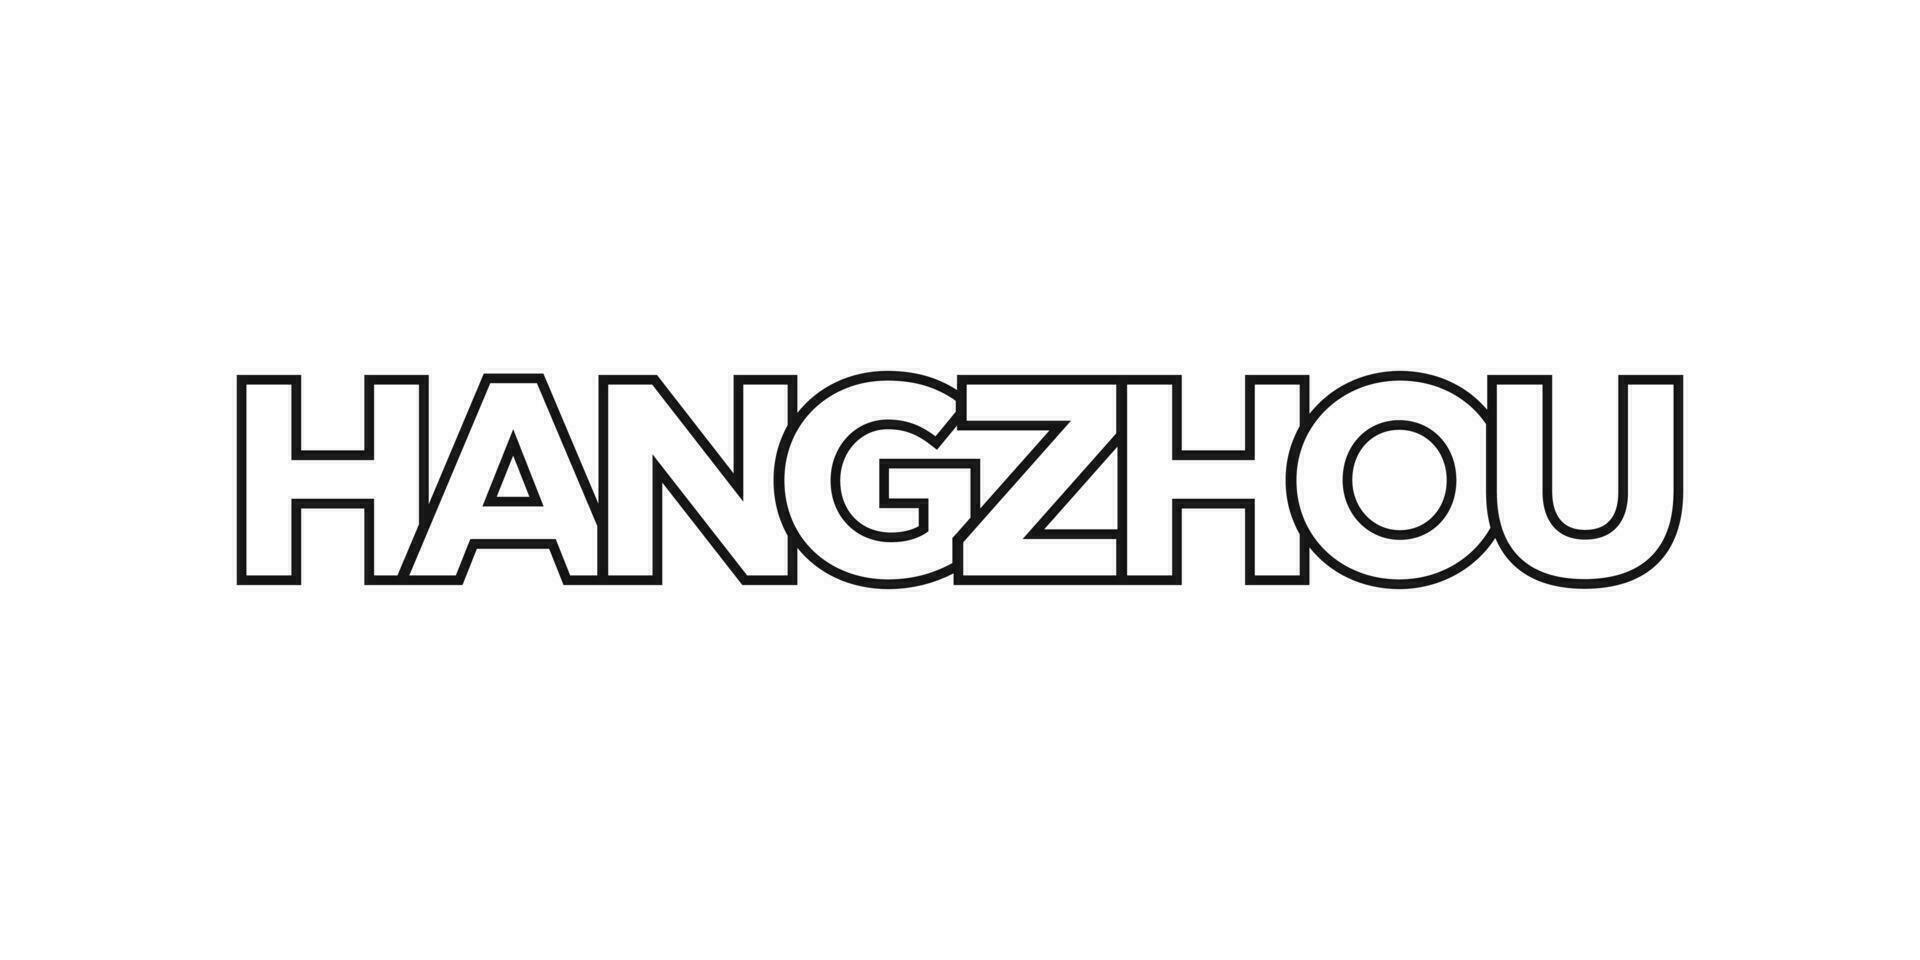 Hangzhou dans le Chine emblème. le conception Caractéristiques une géométrique style, vecteur illustration avec audacieux typographie dans une moderne Police de caractère. le graphique slogan caractères.